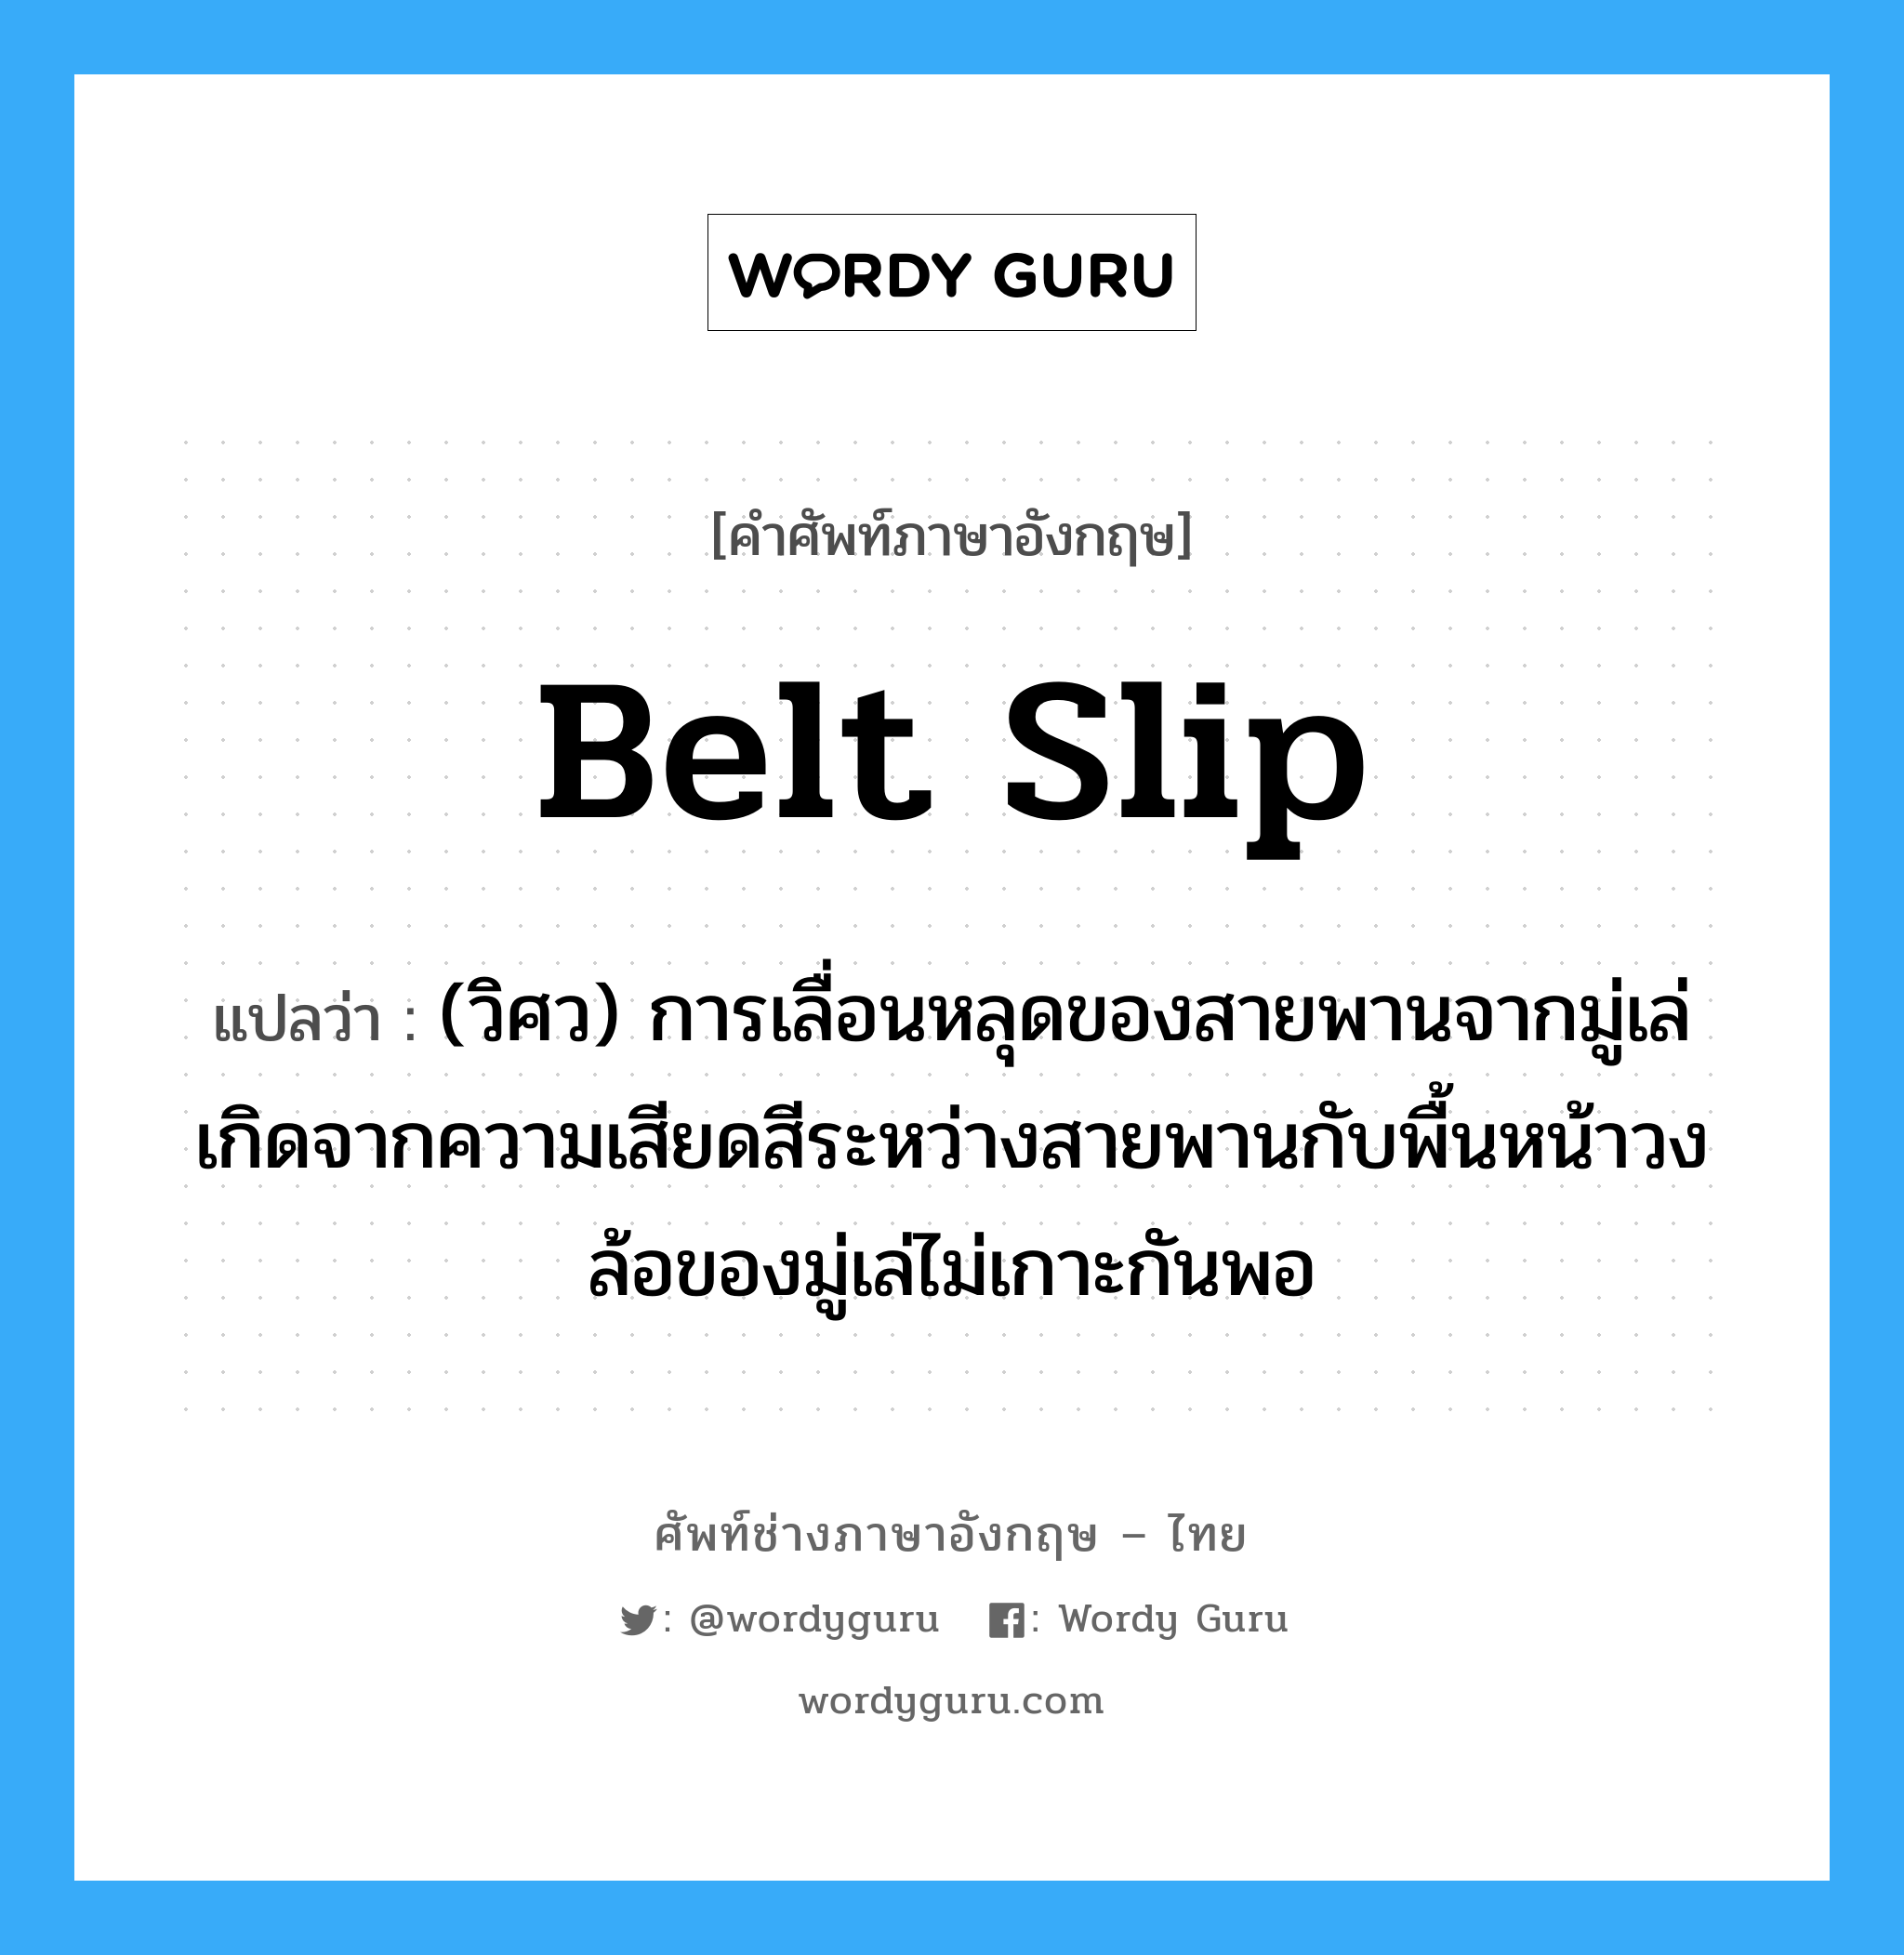 belt slip แปลว่า?, คำศัพท์ช่างภาษาอังกฤษ - ไทย belt slip คำศัพท์ภาษาอังกฤษ belt slip แปลว่า (วิศว) การเลื่อนหลุดของสายพานจากมู่เล่ เกิดจากความเสียดสีระหว่างสายพานกับพื้นหน้าวงล้อของมู่เล่ไม่เกาะกันพอ